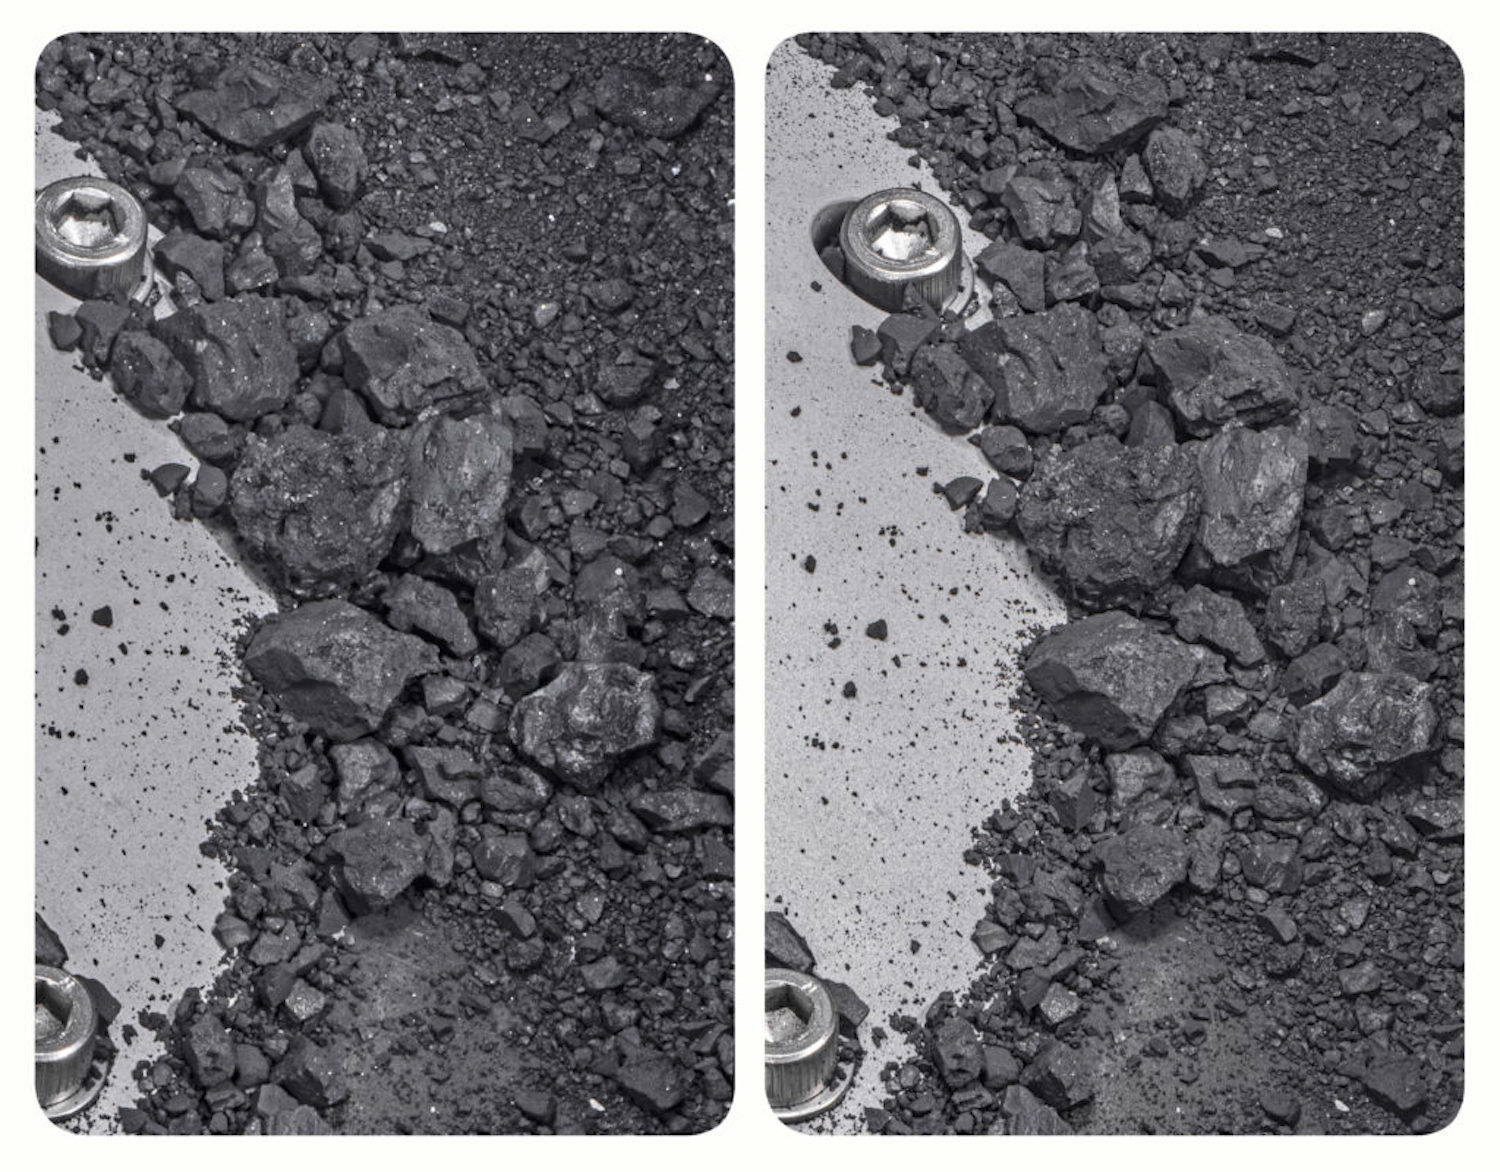 70 grammi di materiale dell'asteroide Bennu, raccolto al di fuori del contenitore di campionamento